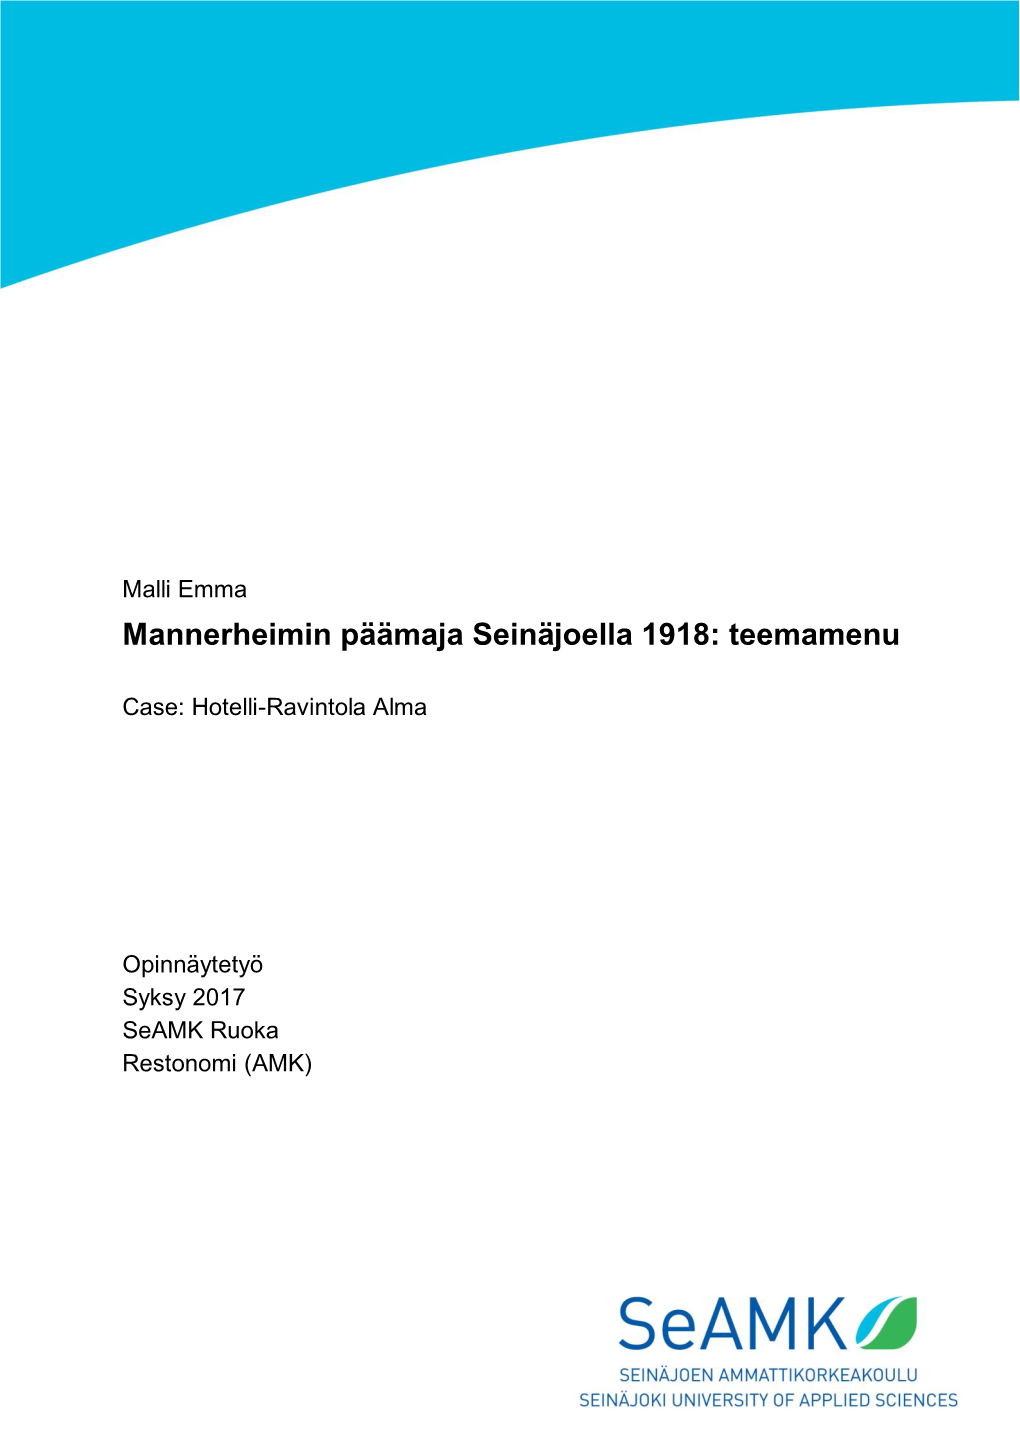 Mannerheimin Päämaja Seinäjoella 1918: Teemamenu